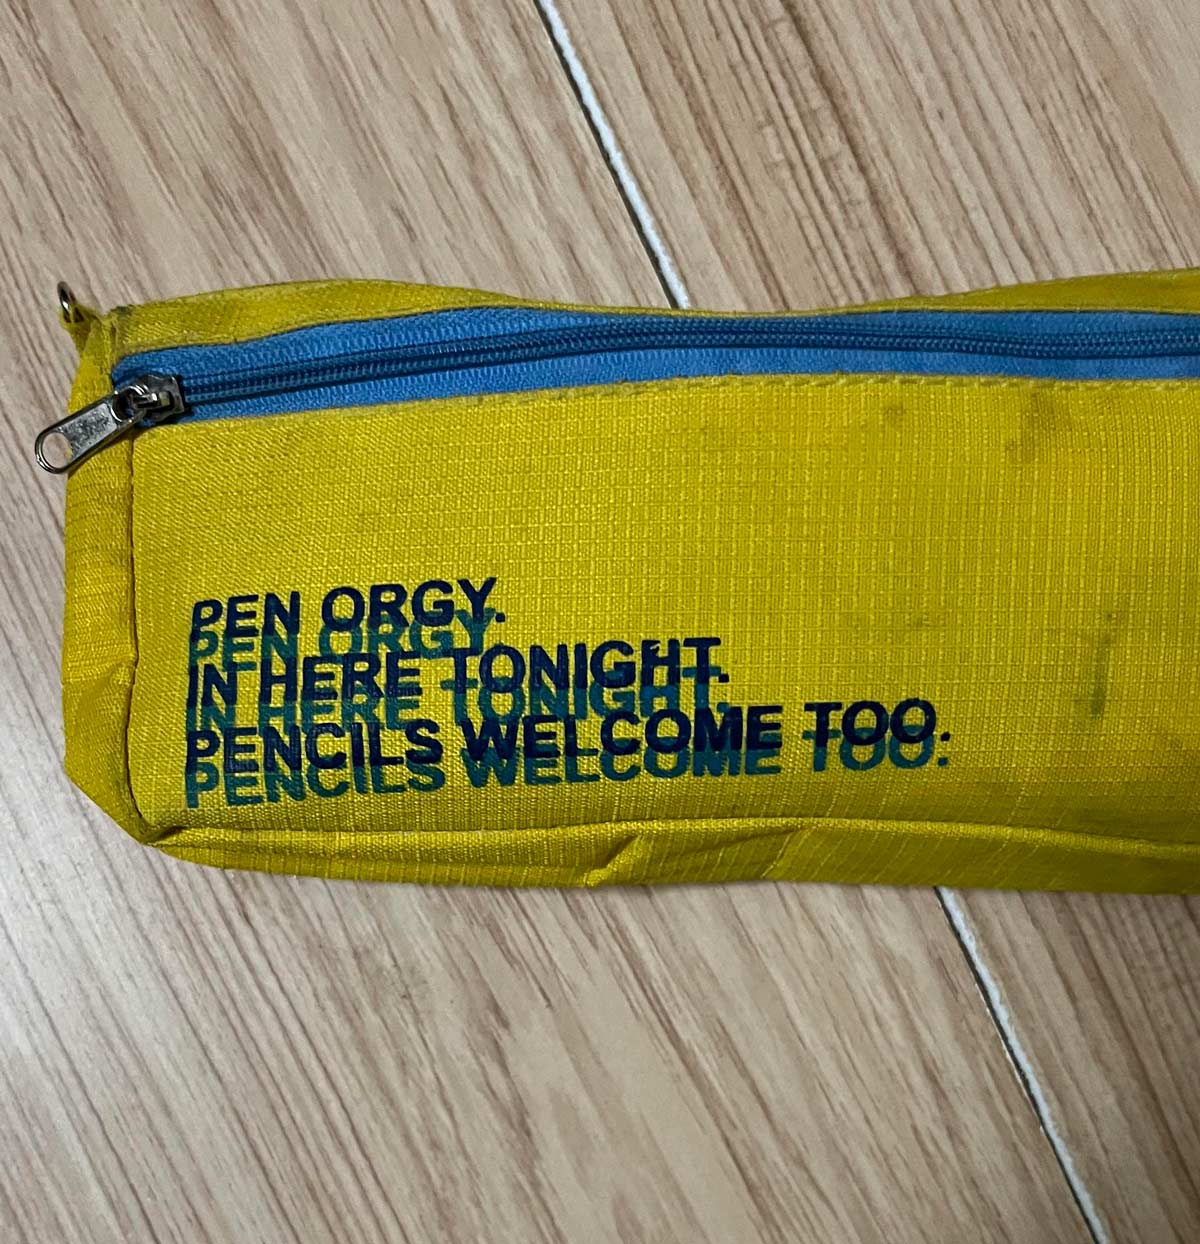 This pencil case